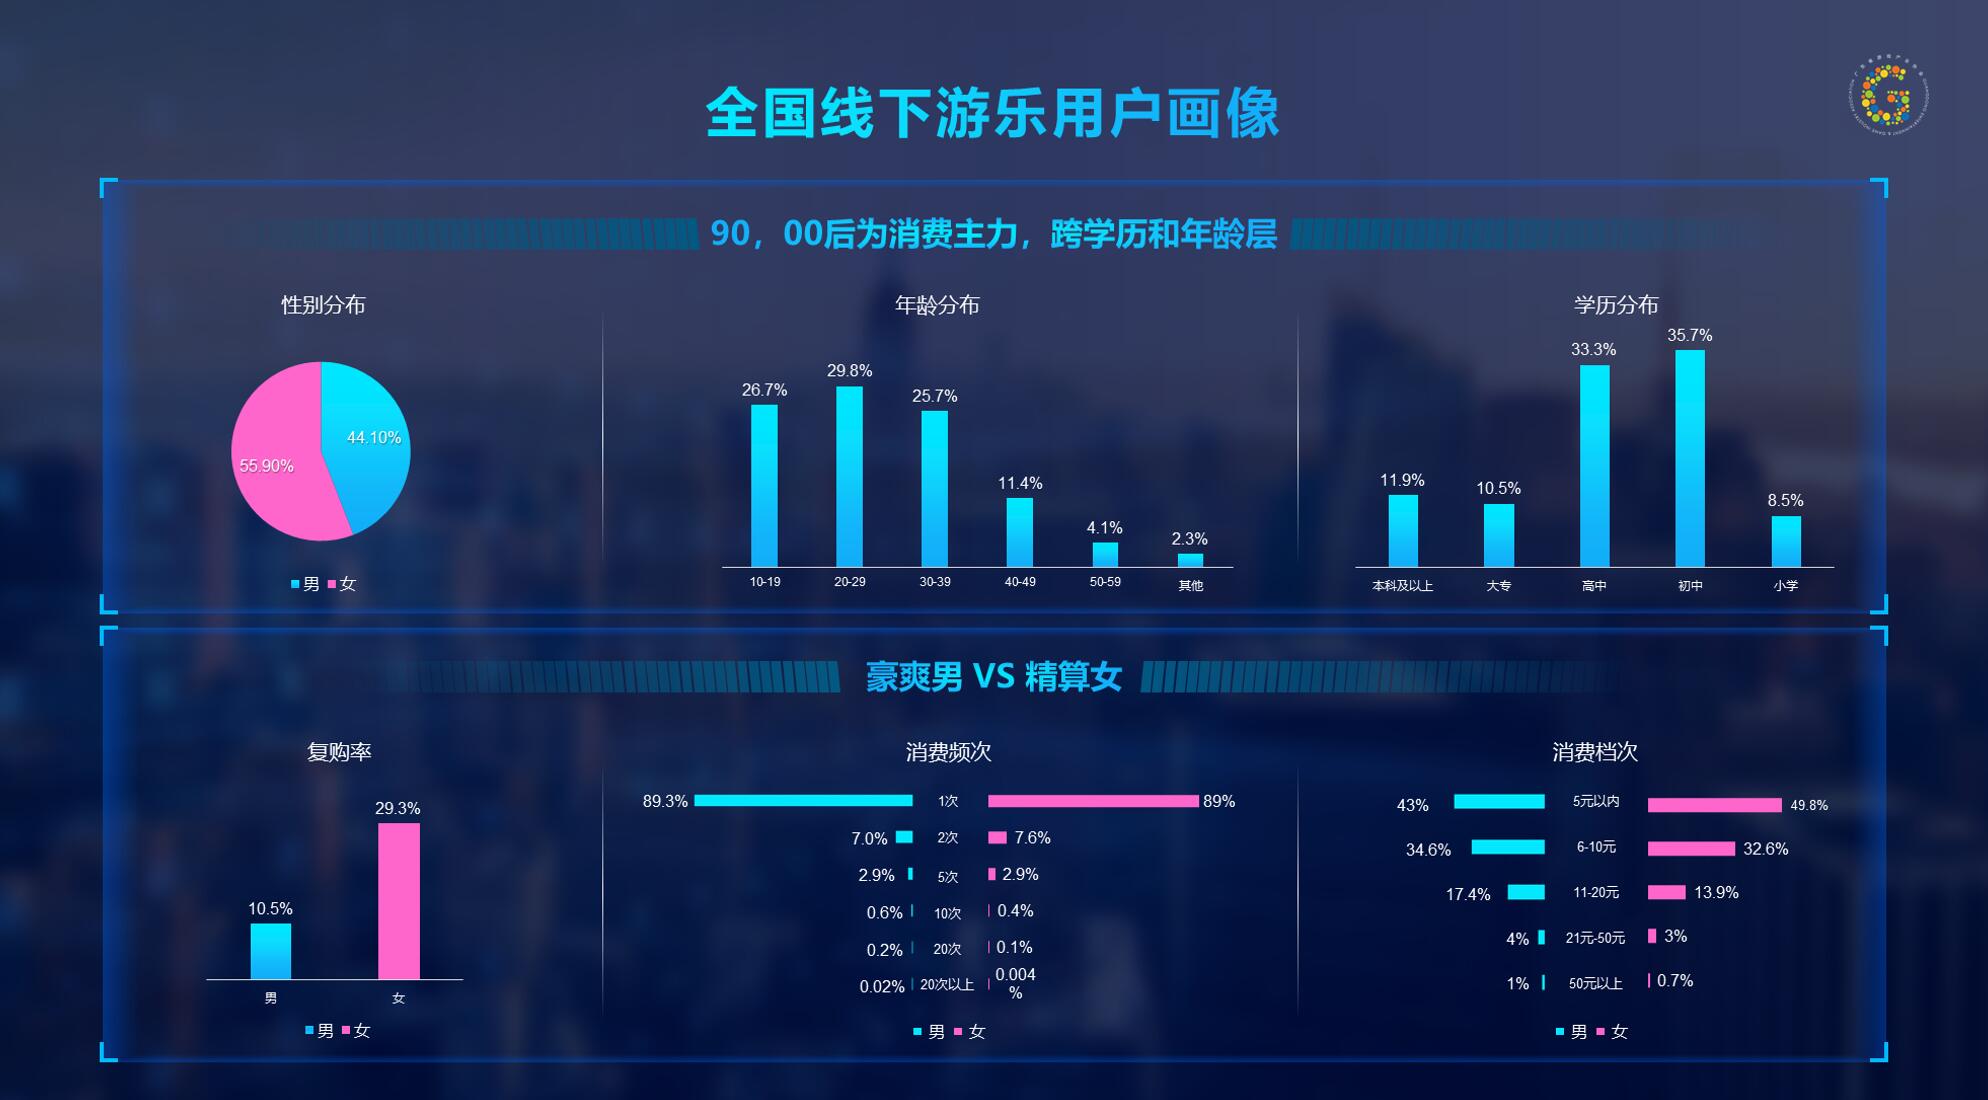 2018年中国线下游戏市场规模1210亿 同比增7.8%